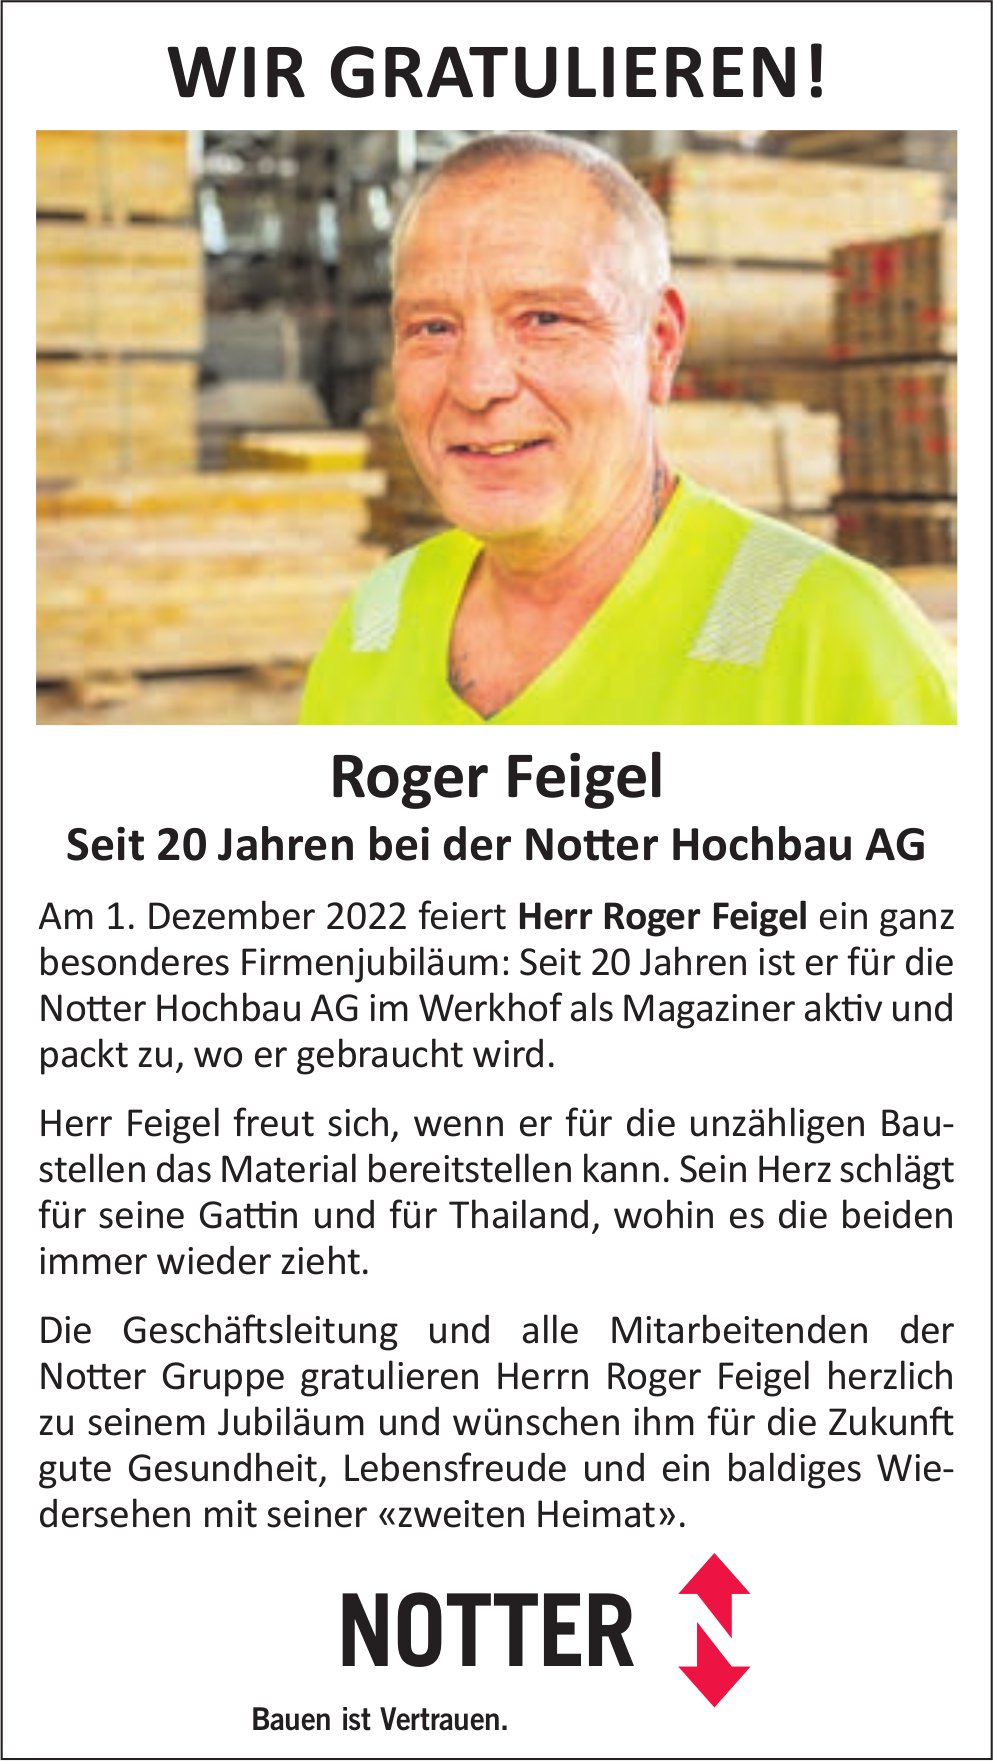 Notter Hochbau AG, Wir gratulieren Roger Feigel für 20 Jahre